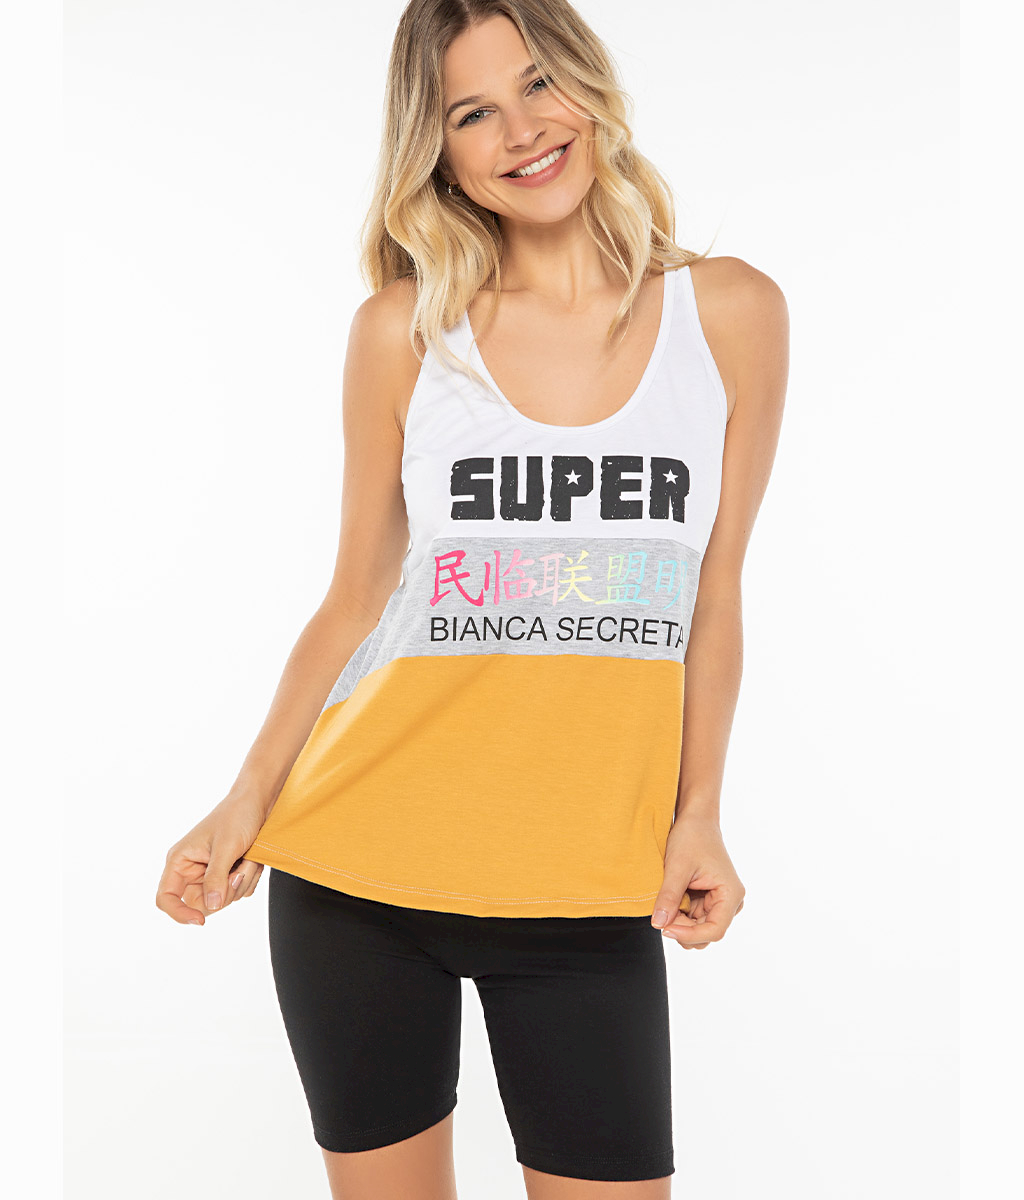 Pijama Super - Bianca Secreta